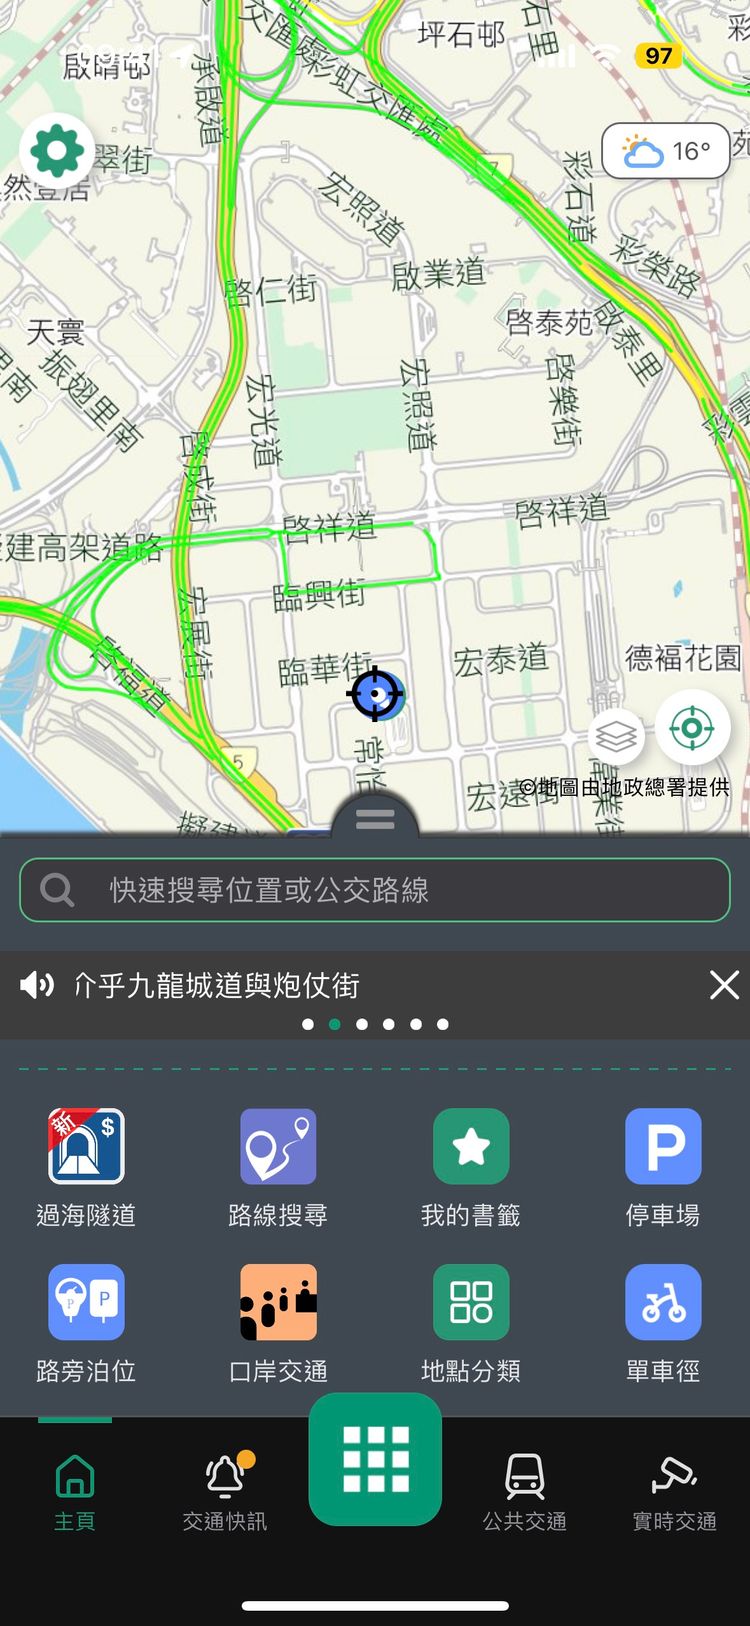 「香港出行易」應用程式增設「過海隧道」功能